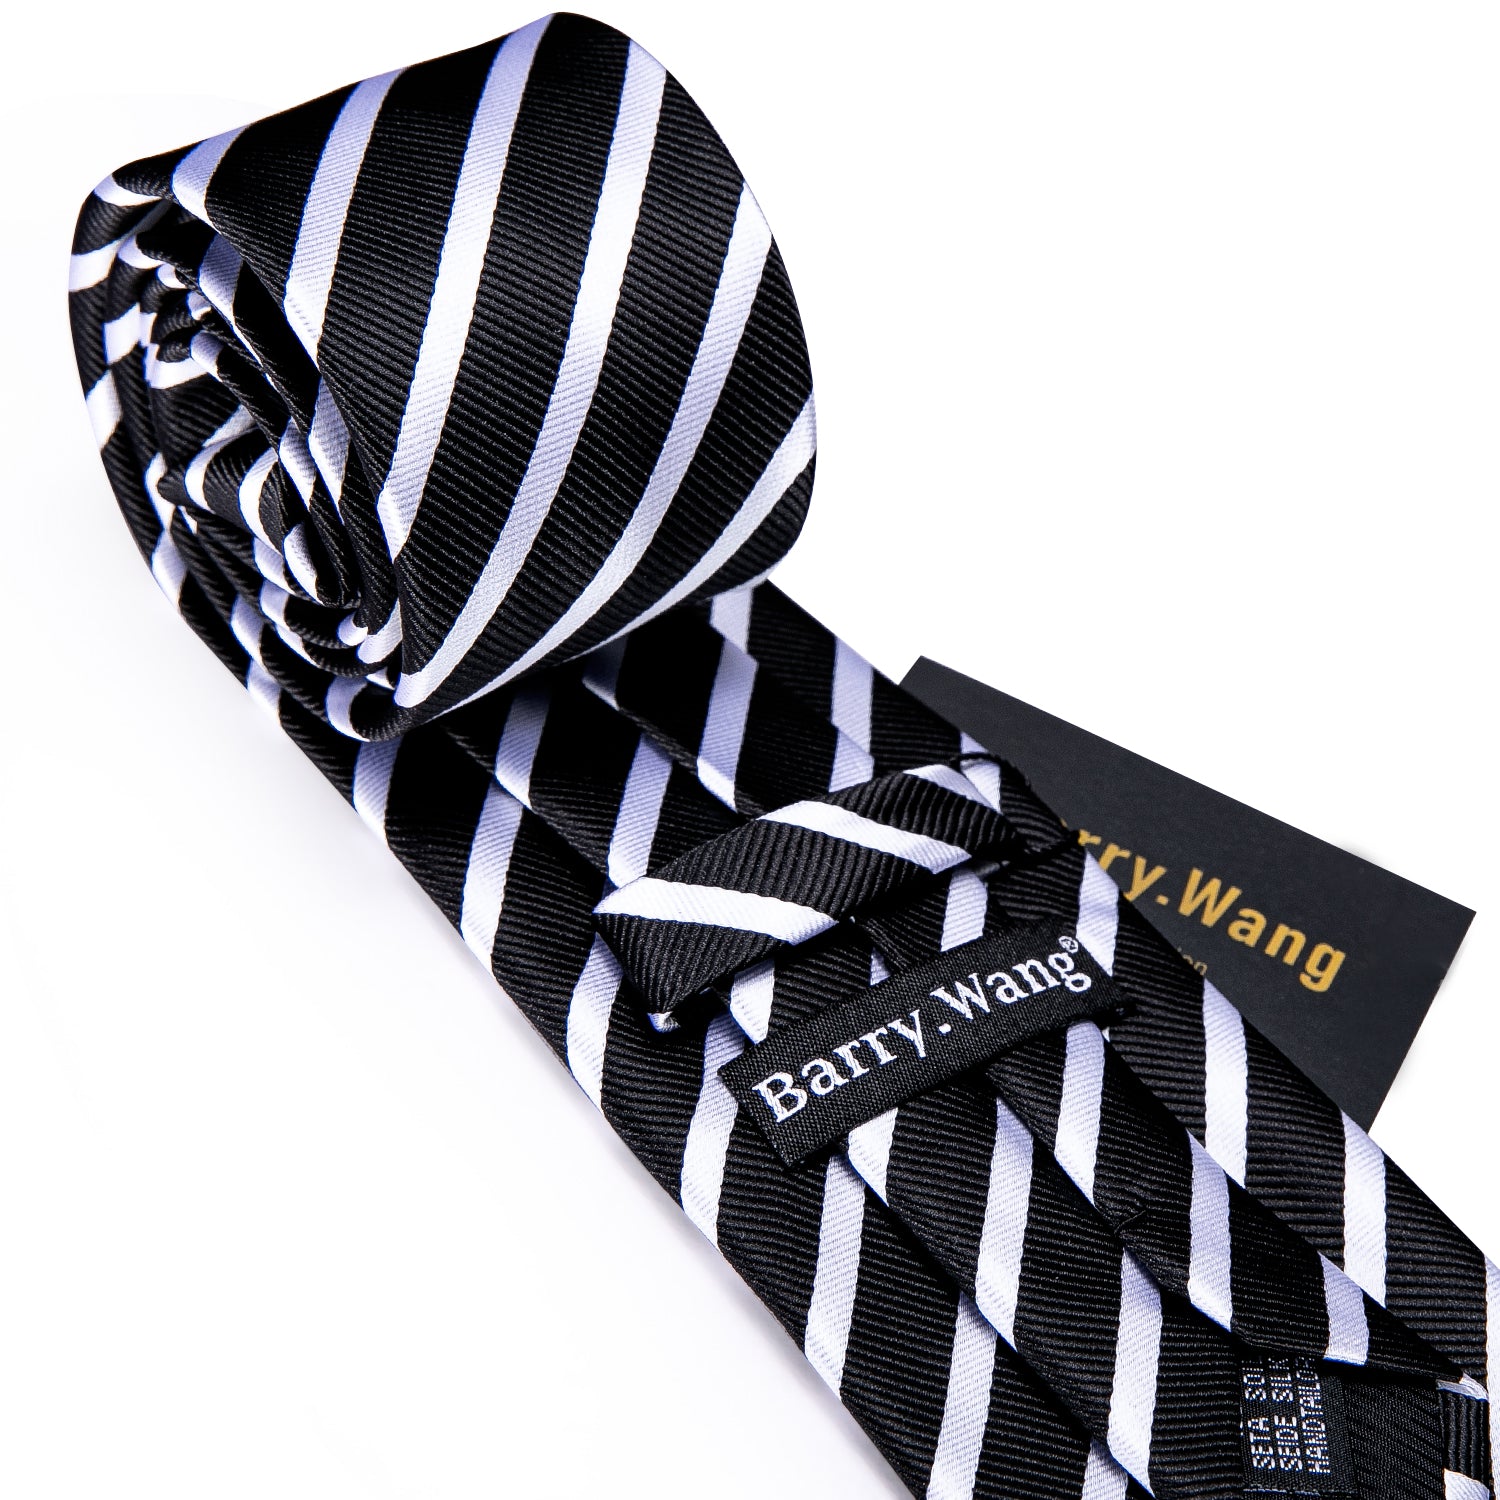 Black White Striped Silk Tie Hanky Cufflinks Set